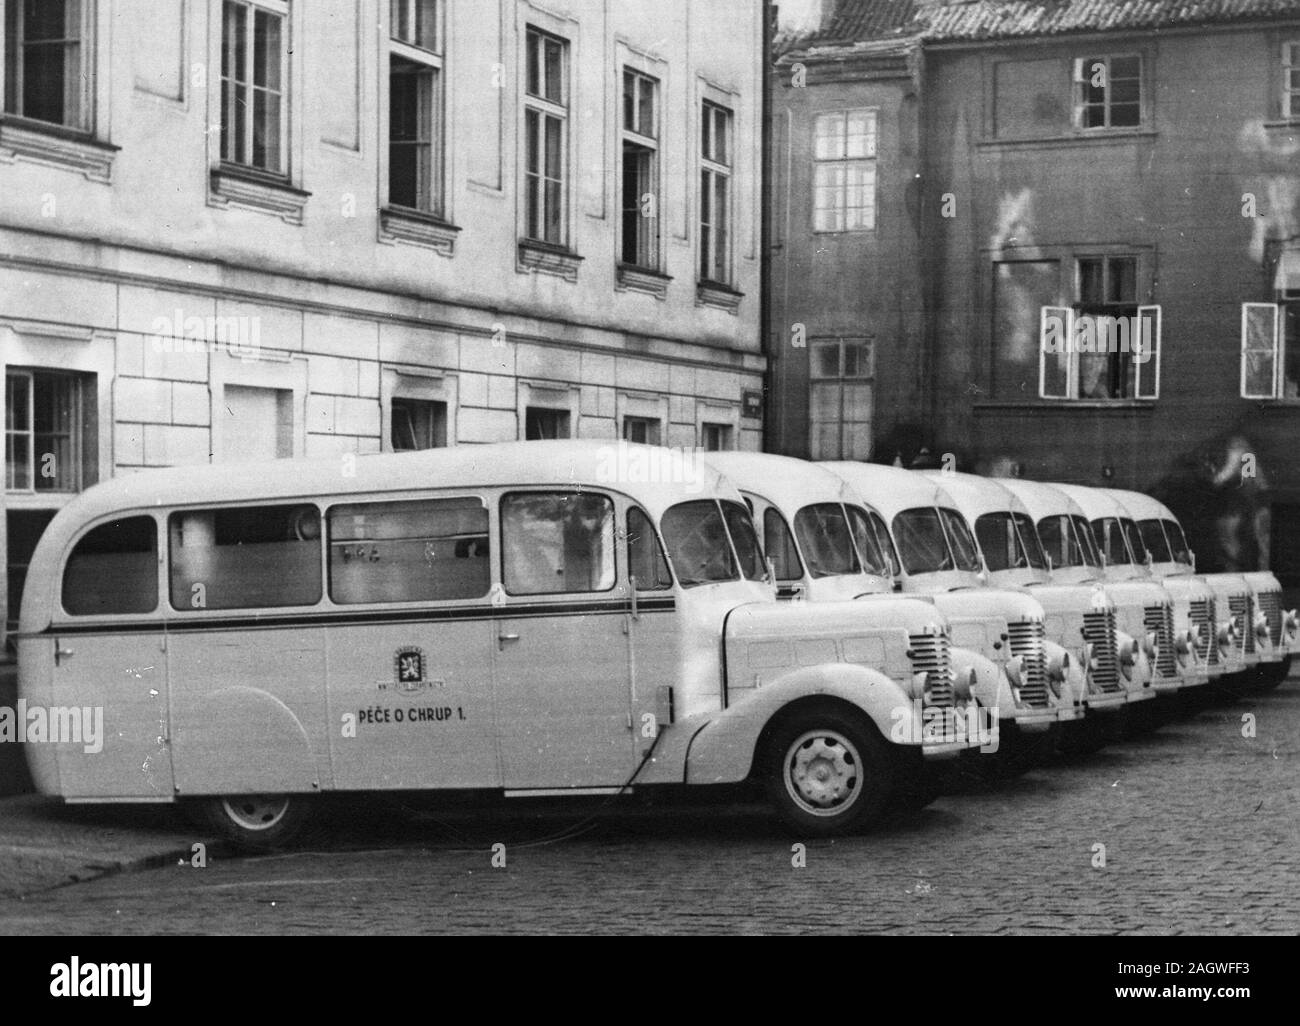 September 30, 1947 - Zahnarzt Busse im Lot in der Tschechoslowakei geparkt Stockfoto